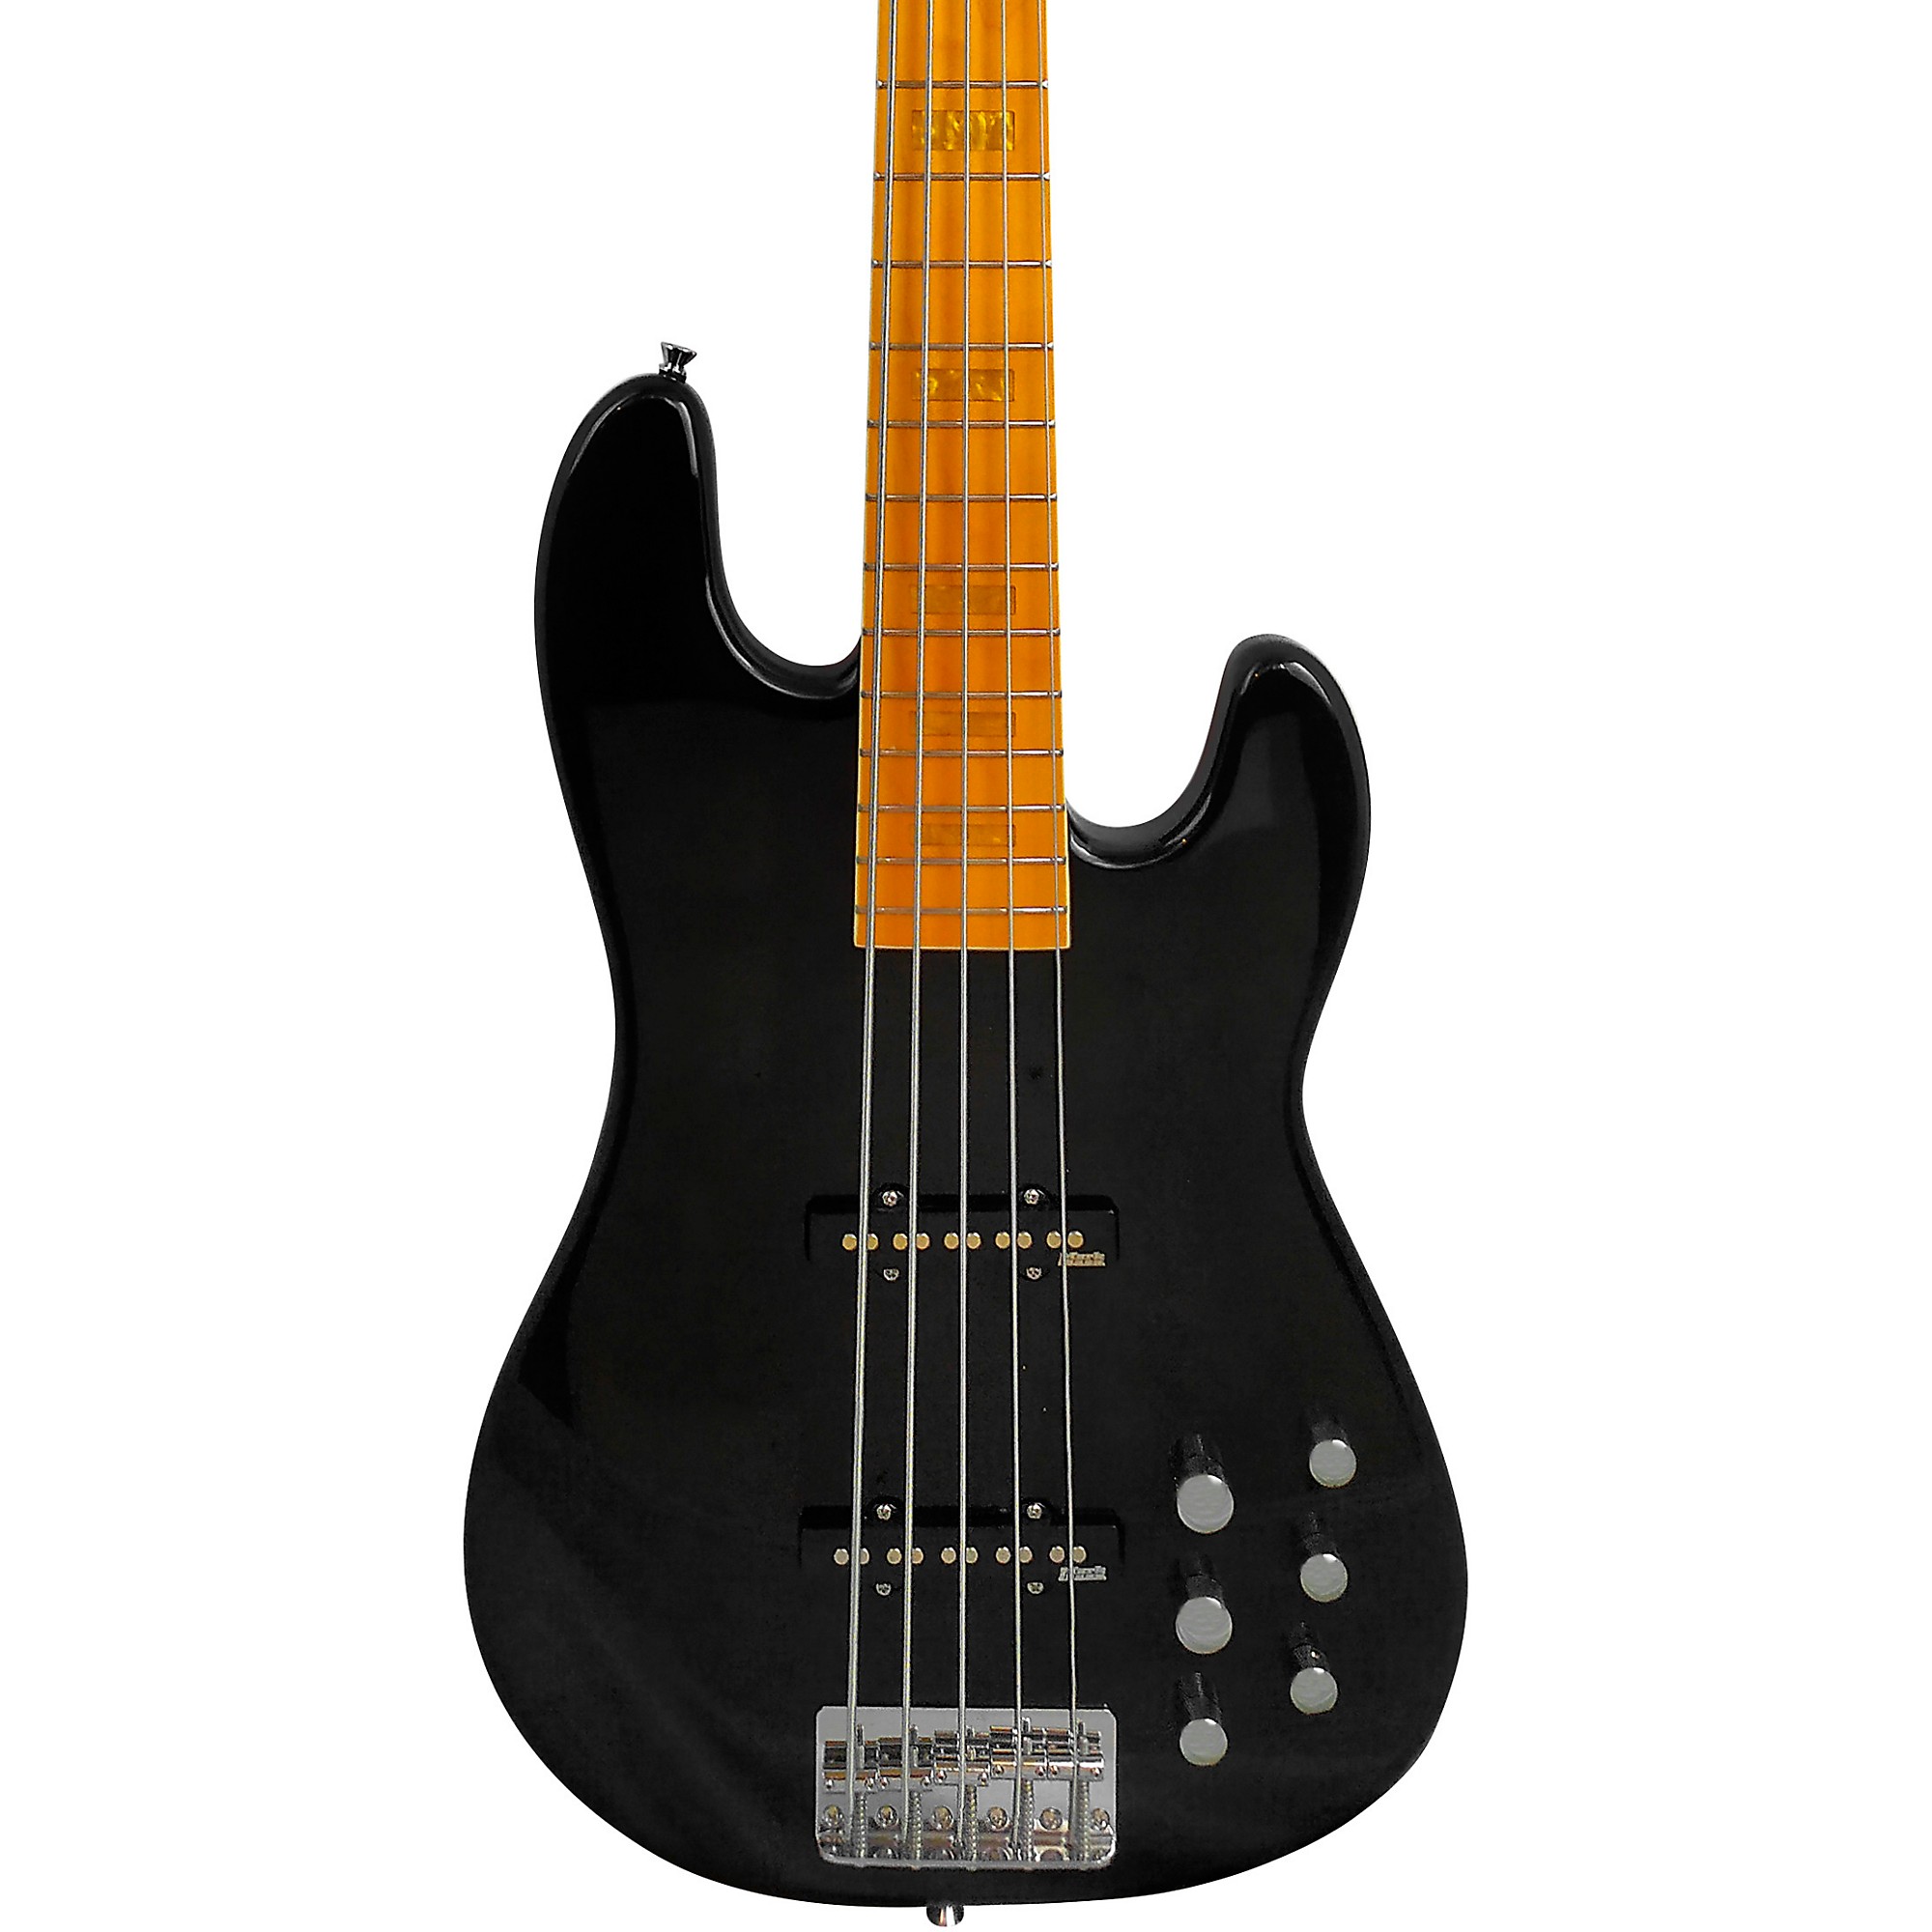 Markbass GV5 Gloxy Val MP 5-струнная электрическая бас-гитара, черная markbass mb gv 5 gloxy val black cr mp 5 струнная бас гитара с чехлом jj активный преамп цвет черный